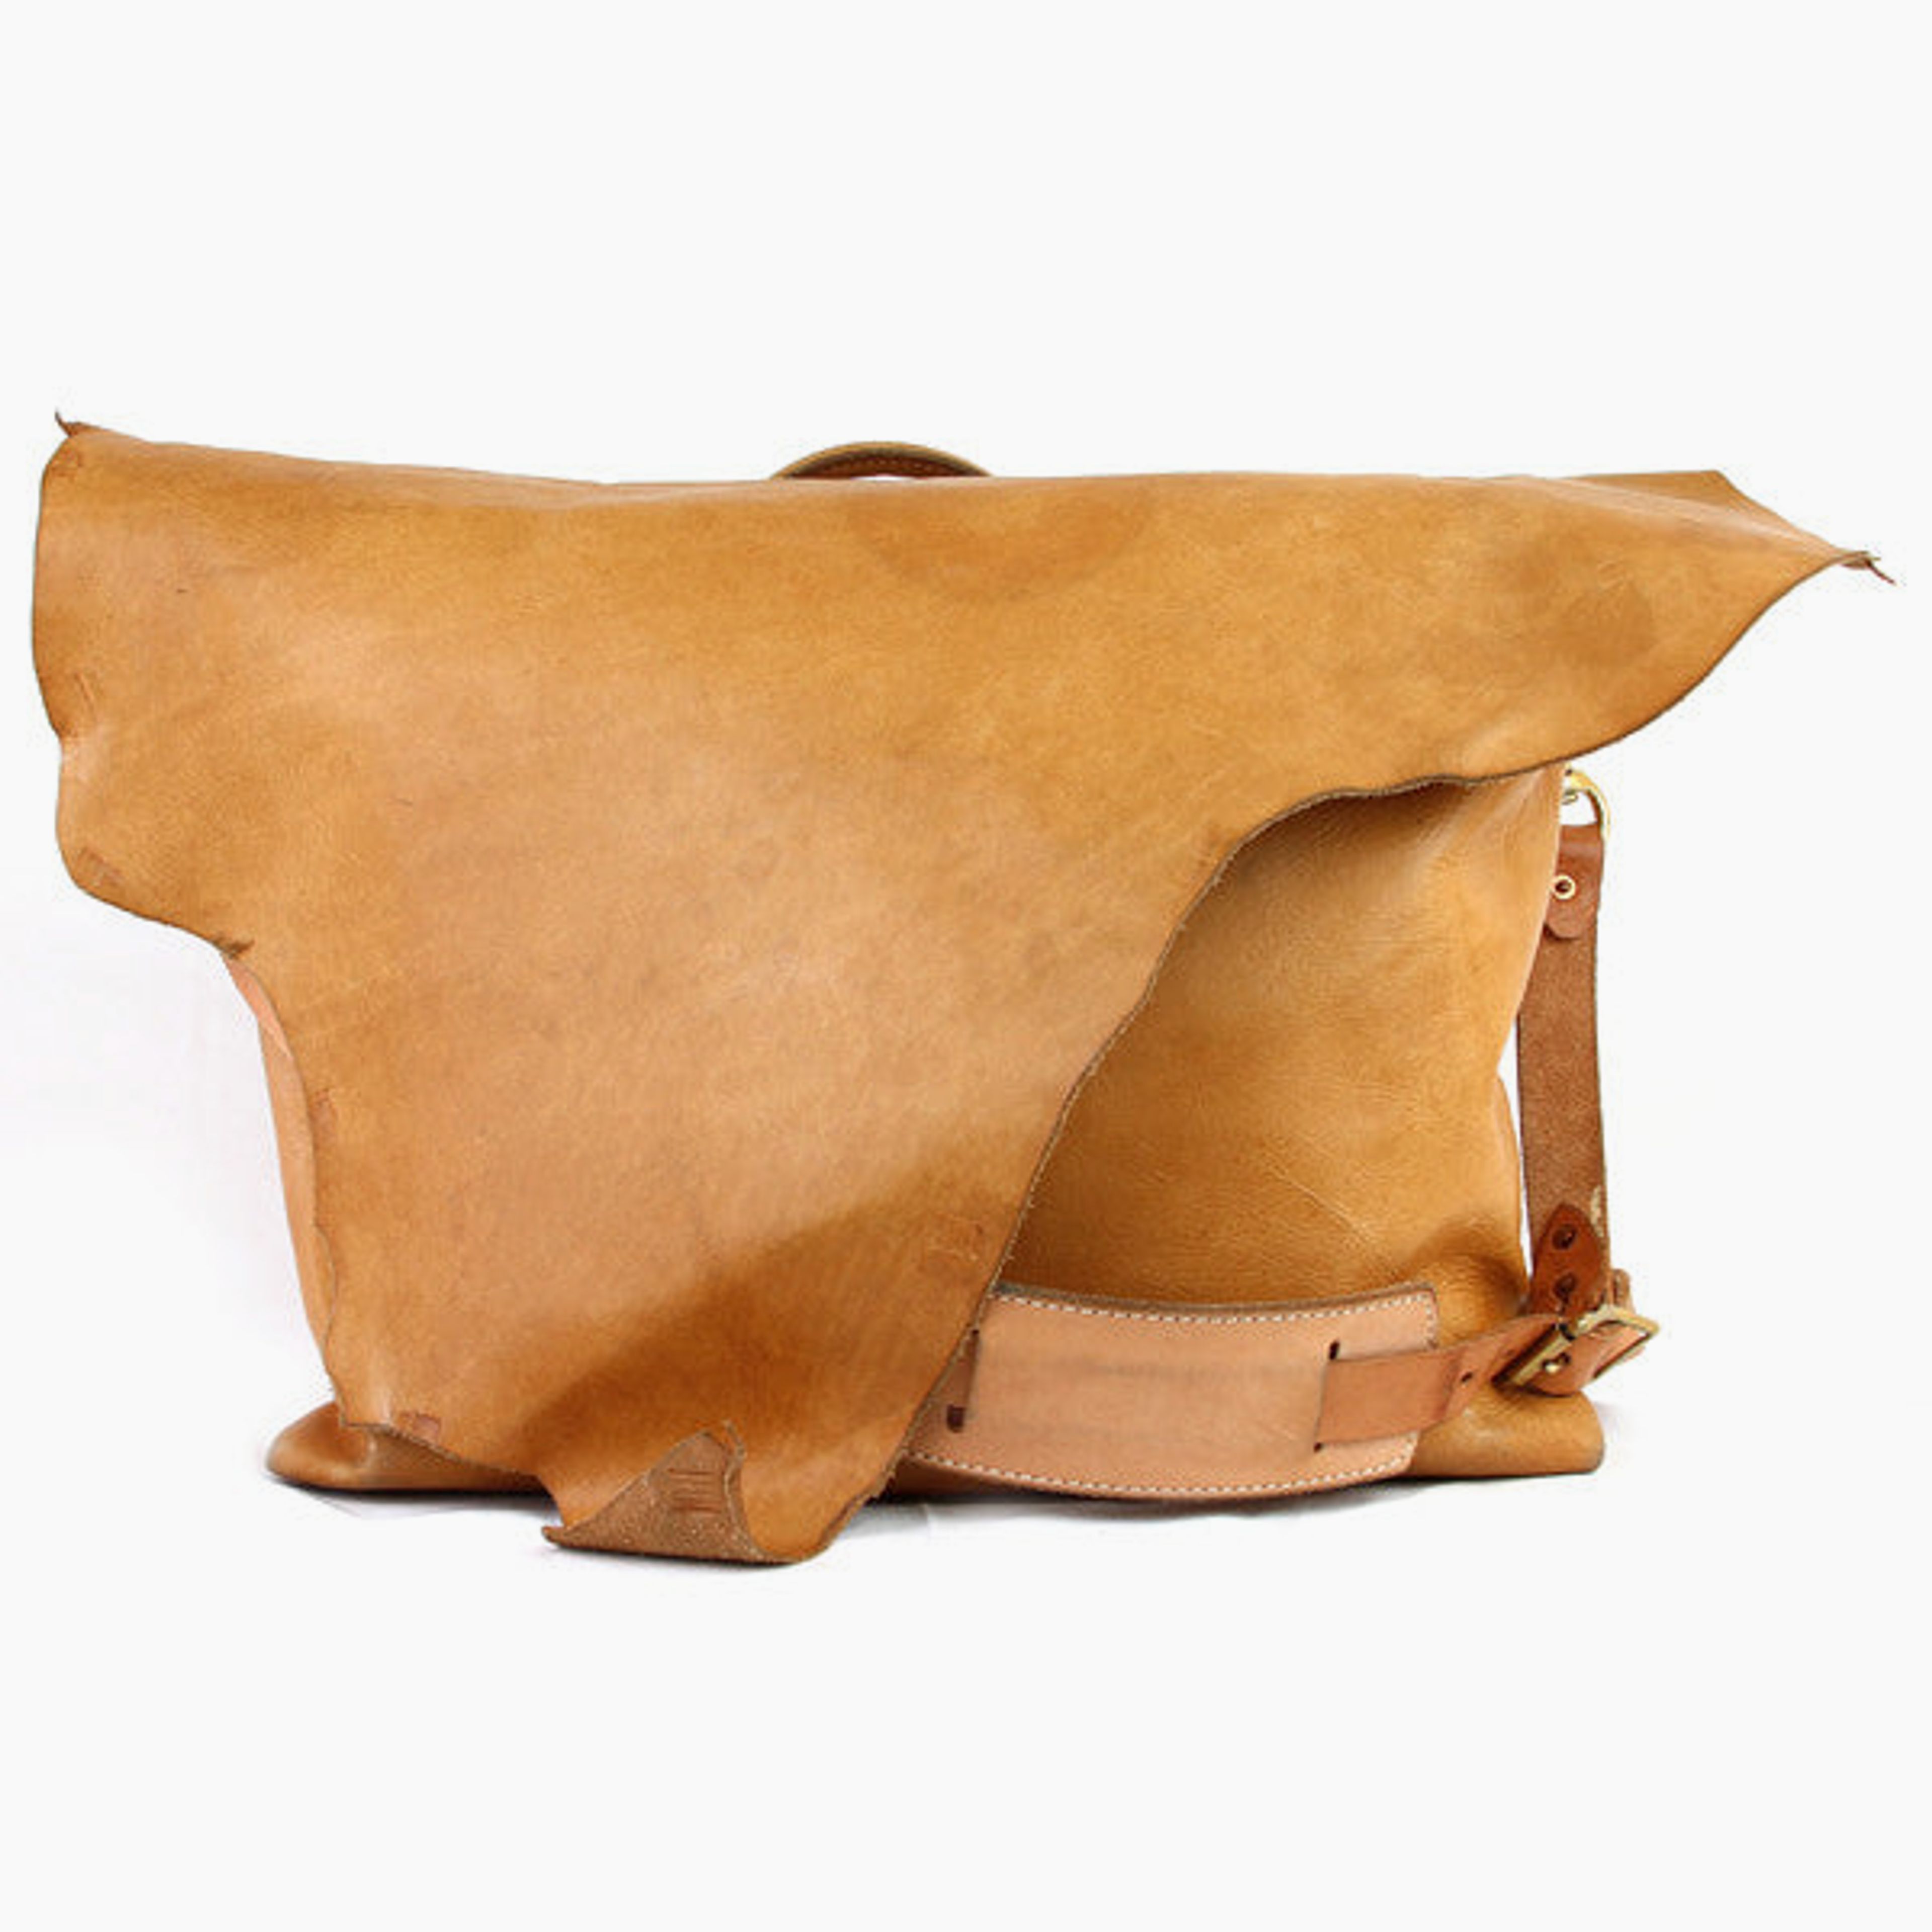 Large Leather Messenger Bag - Natural "Cascade"